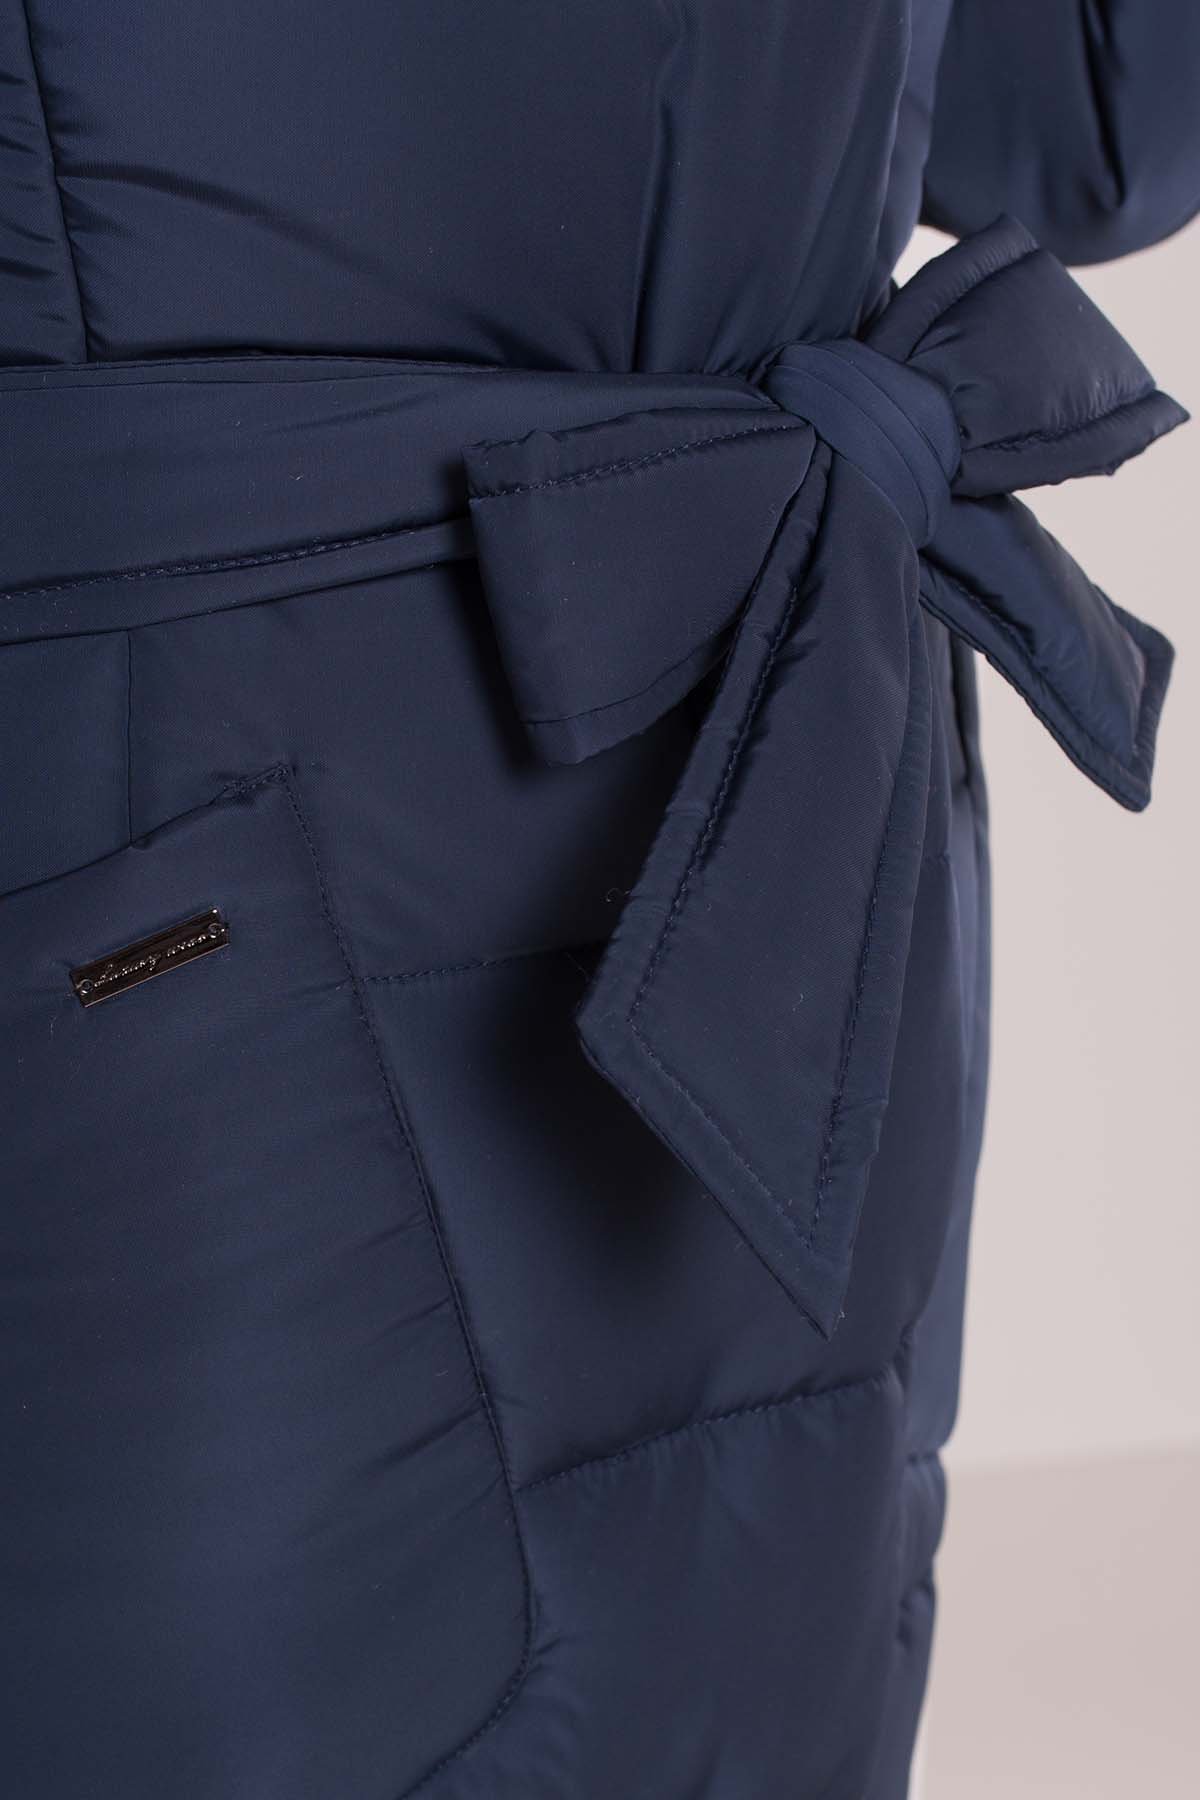 Пуховик-пальто с поясом Жако 5540 АРТ. 38050 Цвет: Темно-синий - фото 6, интернет магазин tm-modus.ru